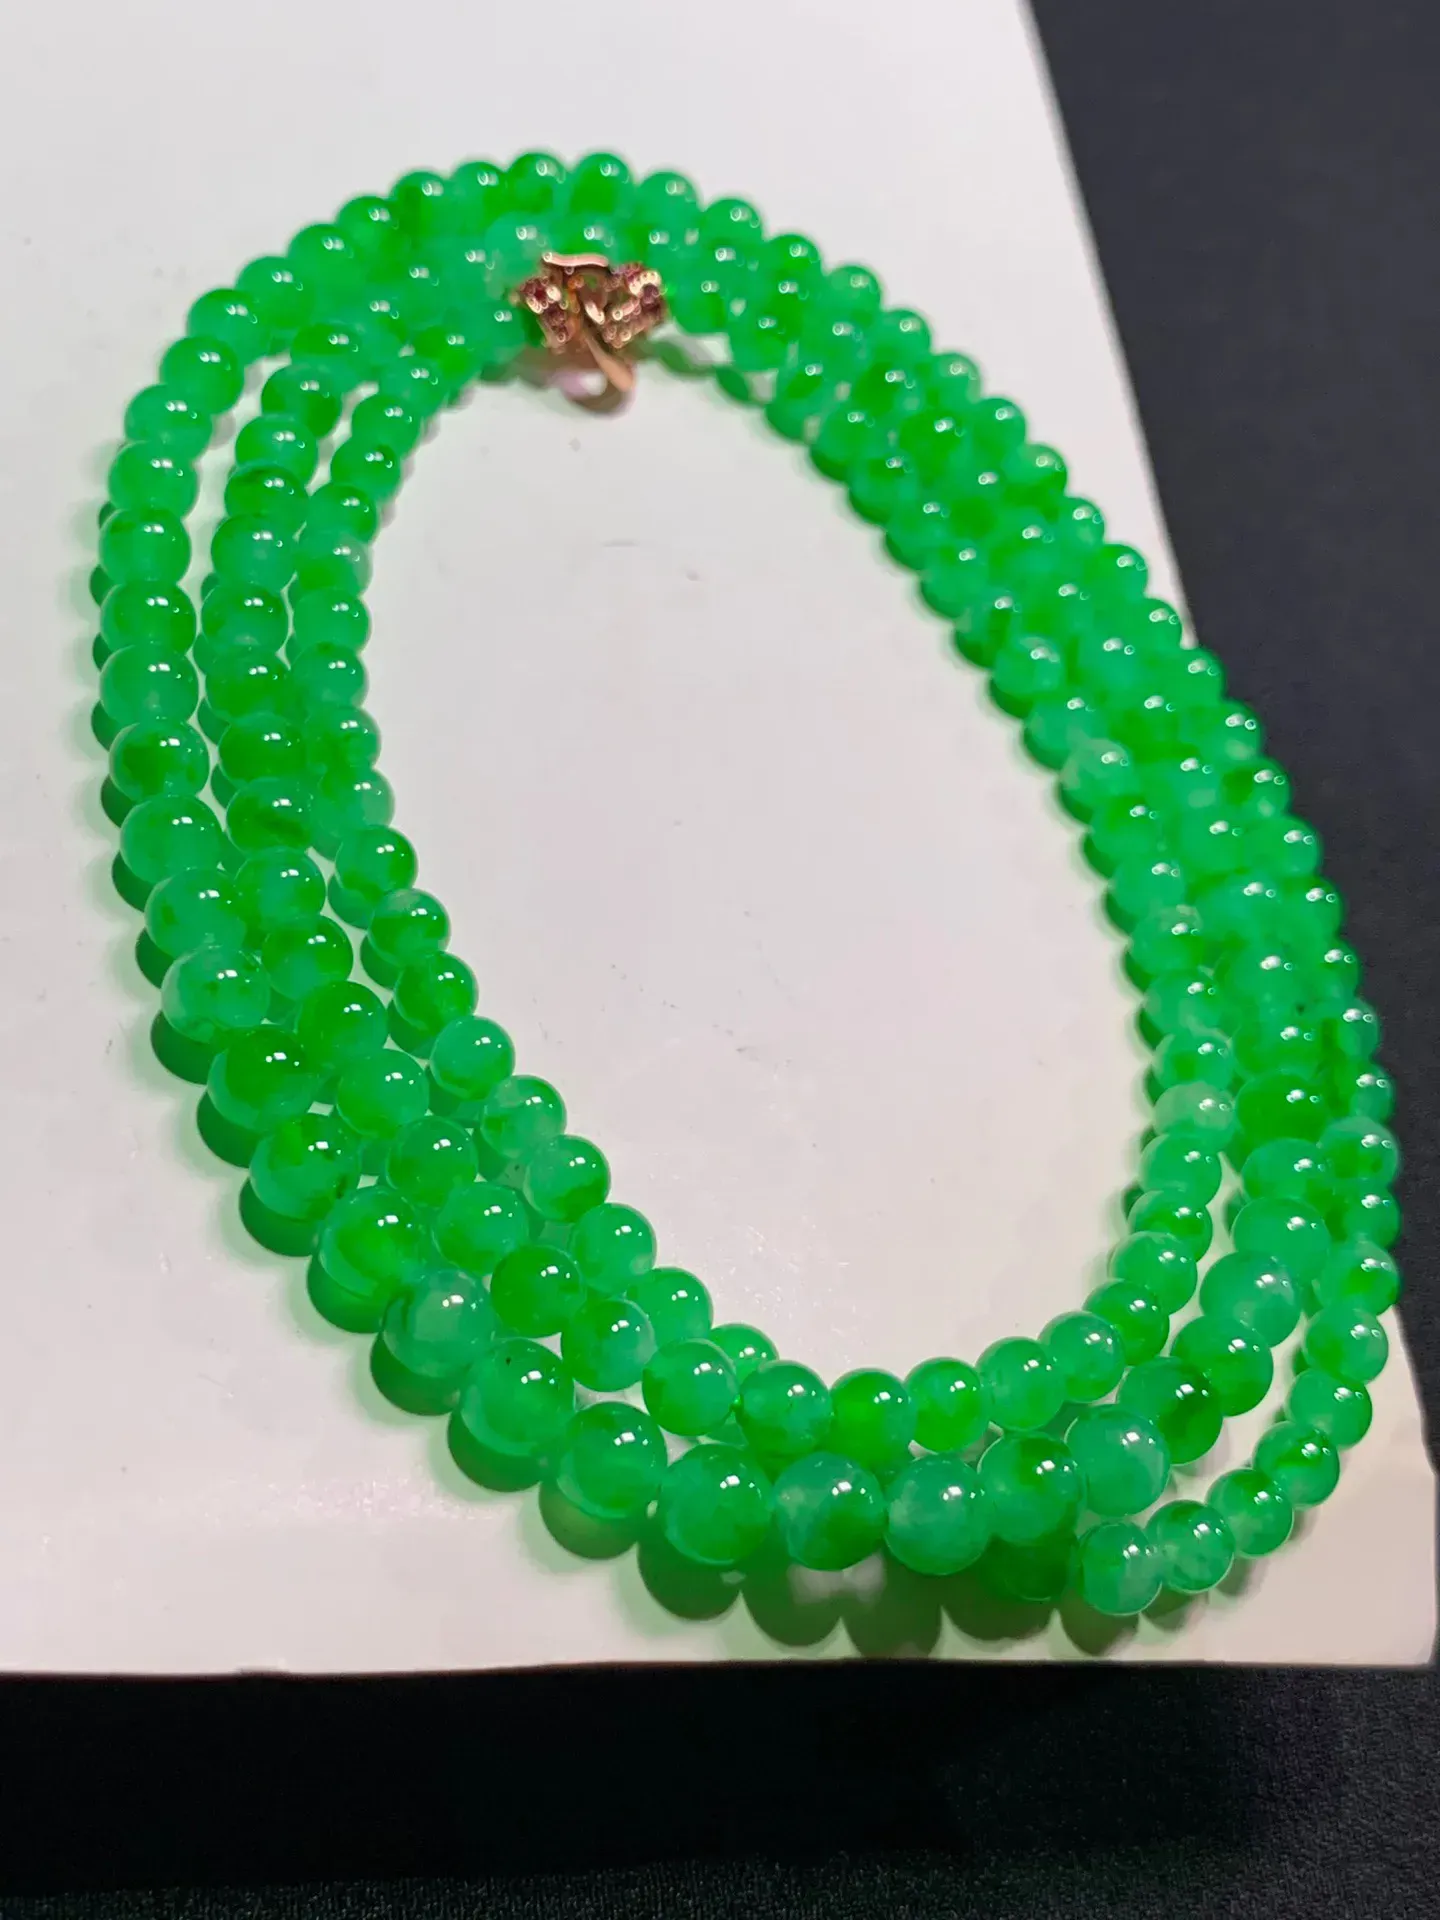 冰绿塔珠项链，直径:4.8/3.7mm   152颗   水润色阳绿 色泽艳丽 玉质水润  底色清爽